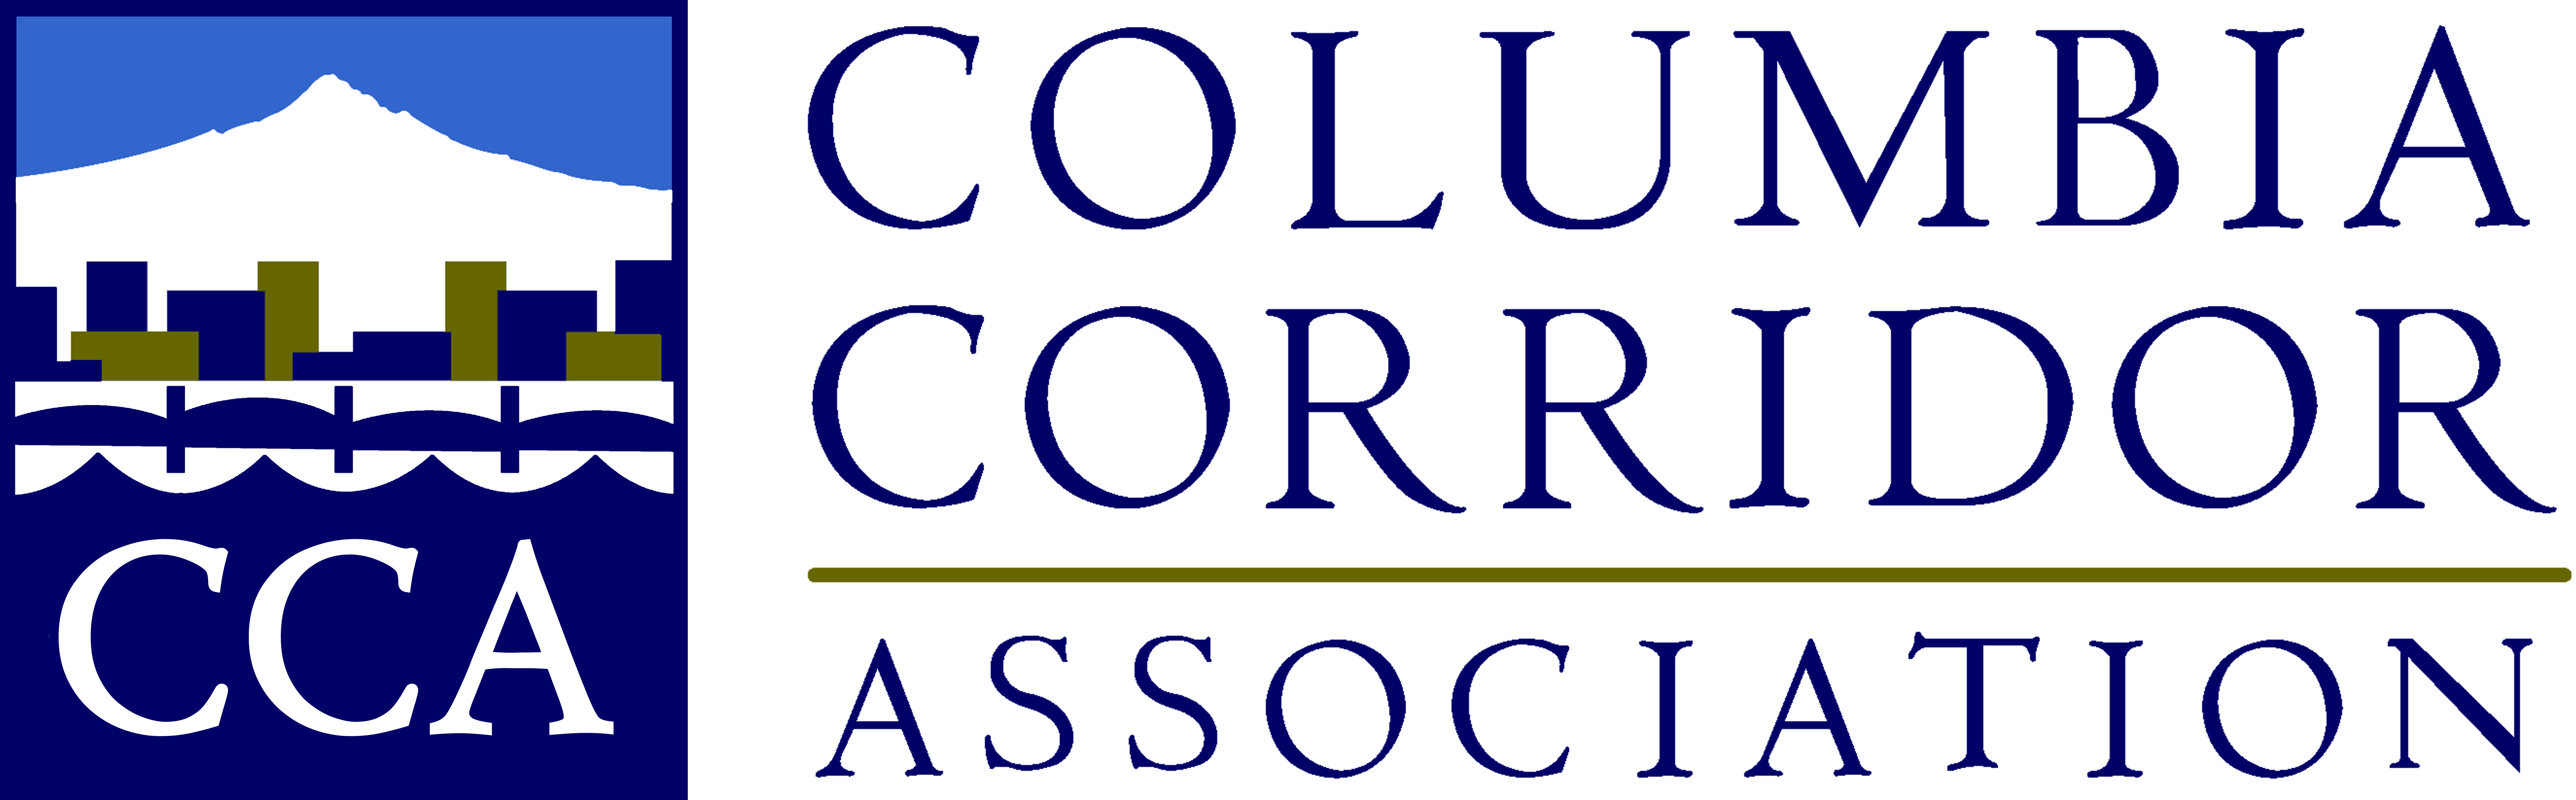 Columbia Corridor Association logo